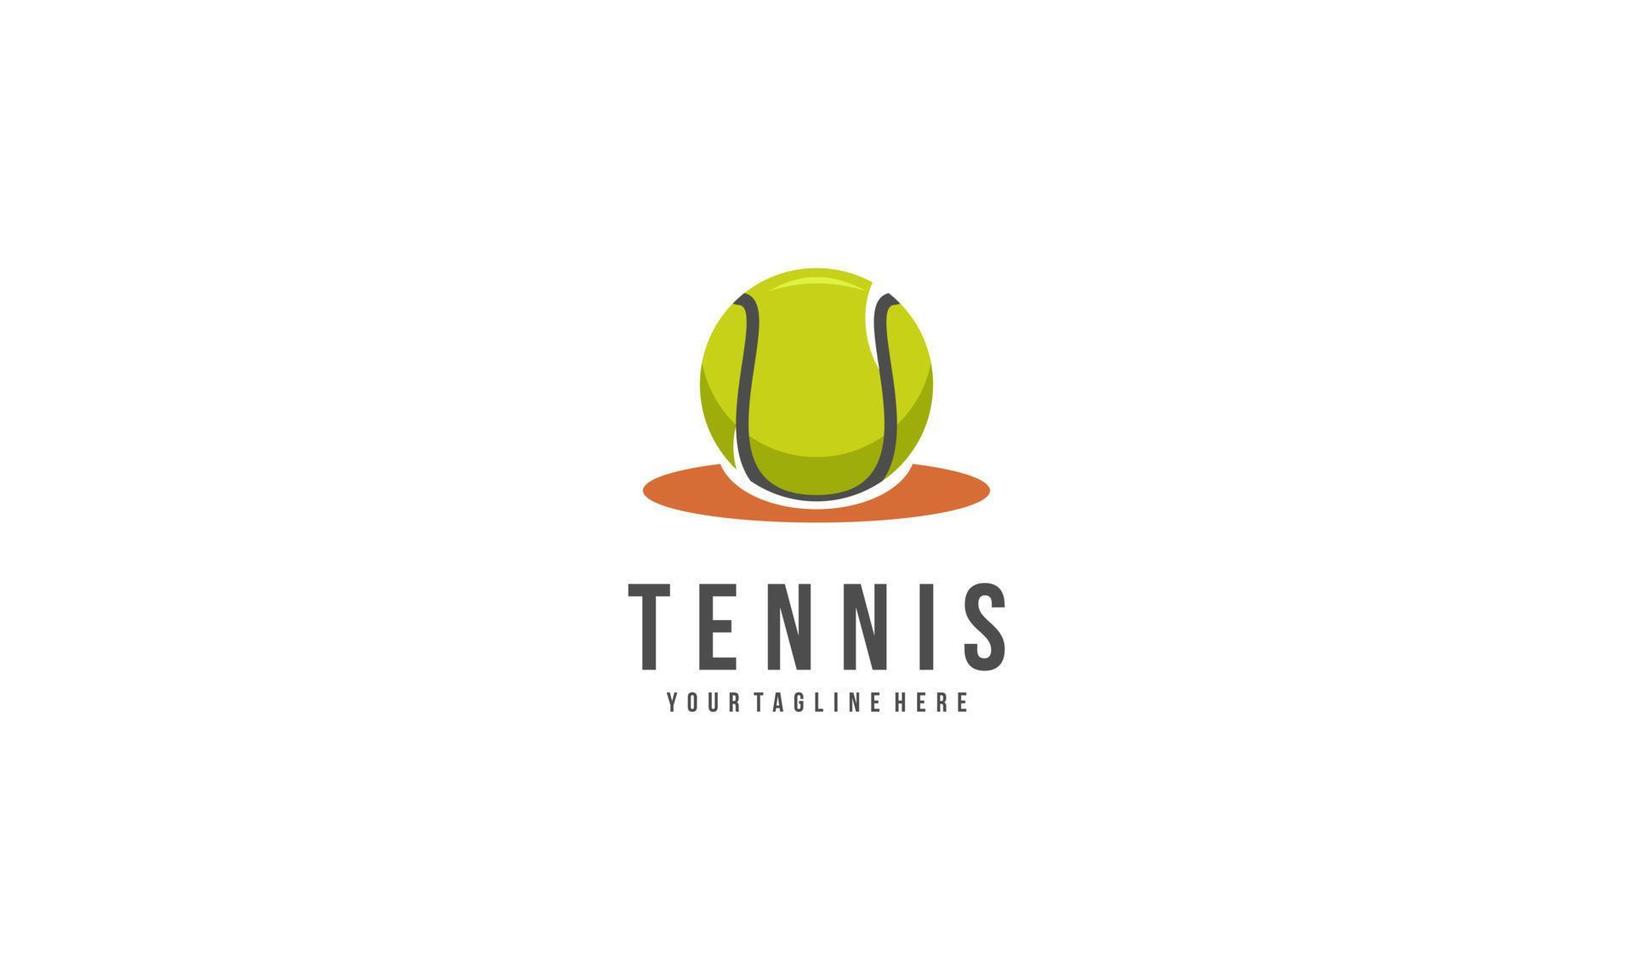 Tennis racket and ball logo design vector